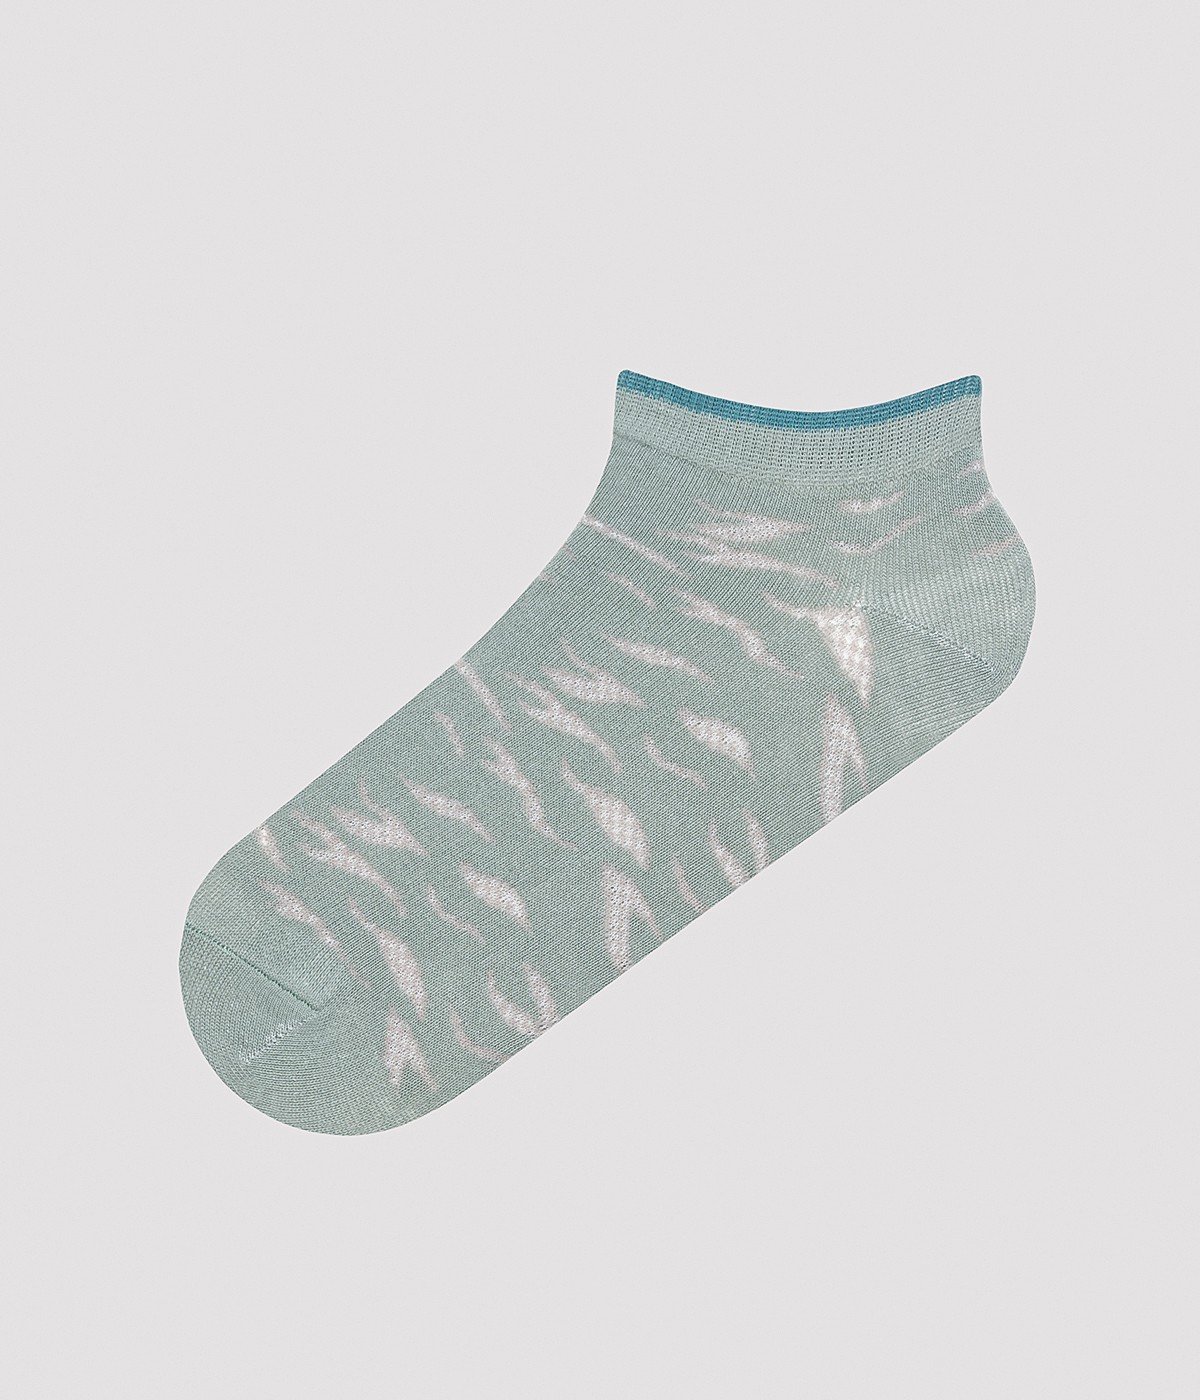 Leopar Mix 3in1 Liner Socks